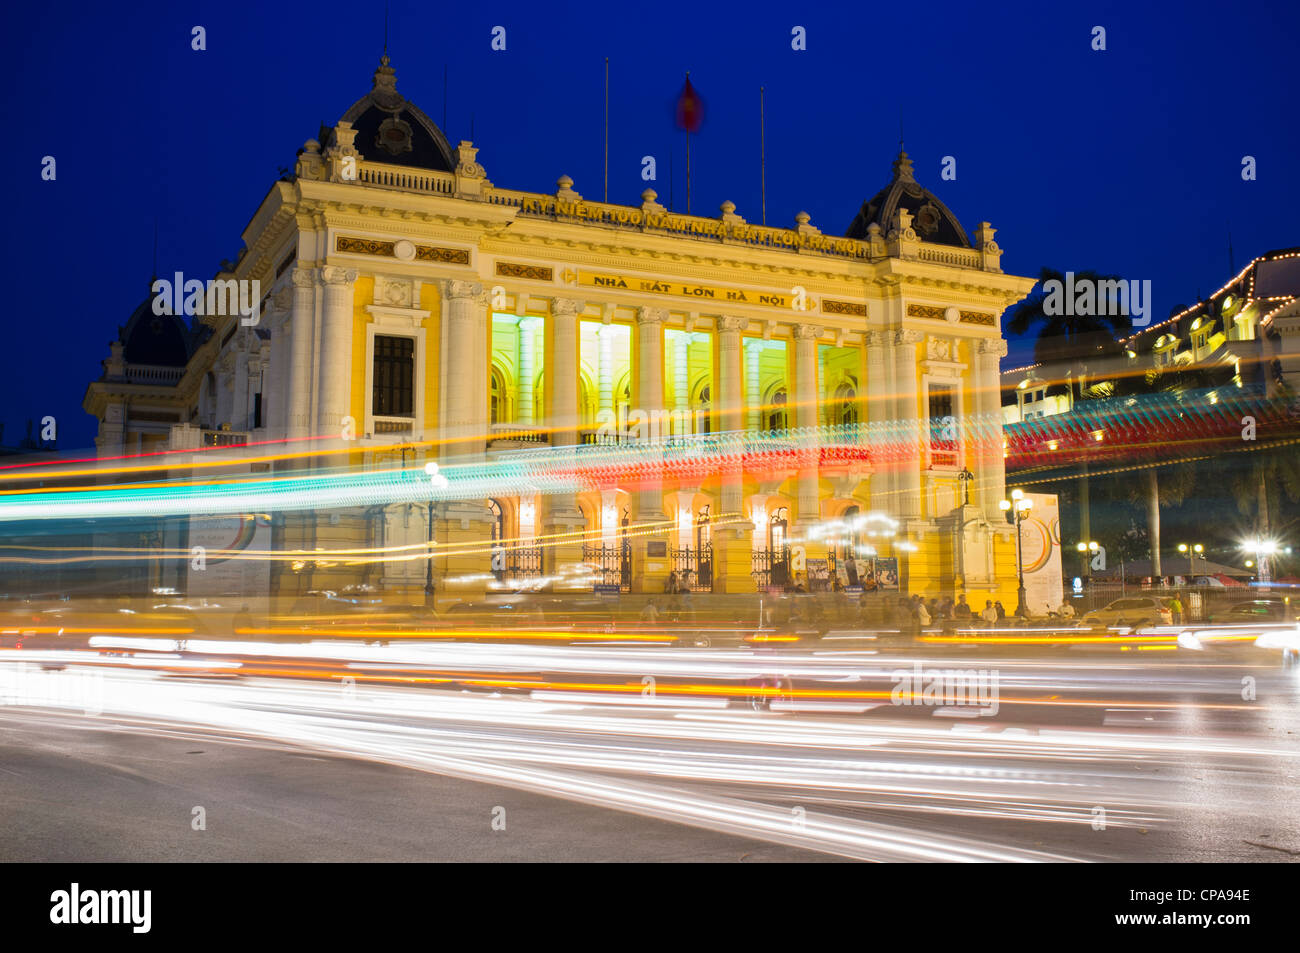 Night view of Hanoi Opera House with traffic Vietnam Stock Photo